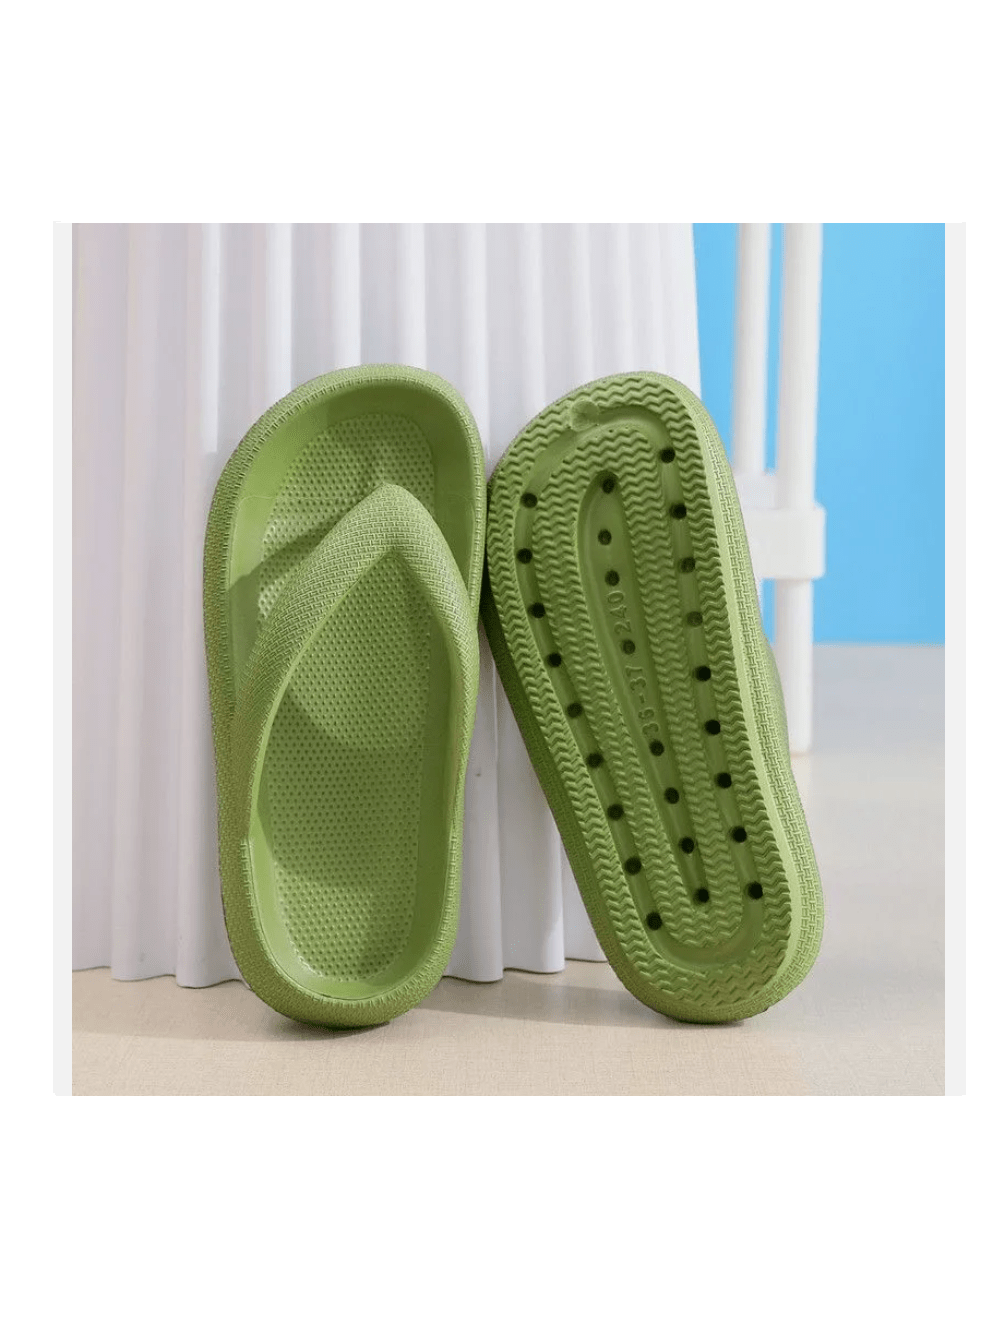 Womens Men Thick Platform Thong Flops Sandals Beach Comfort EVA Slipper Shoes-Green-1